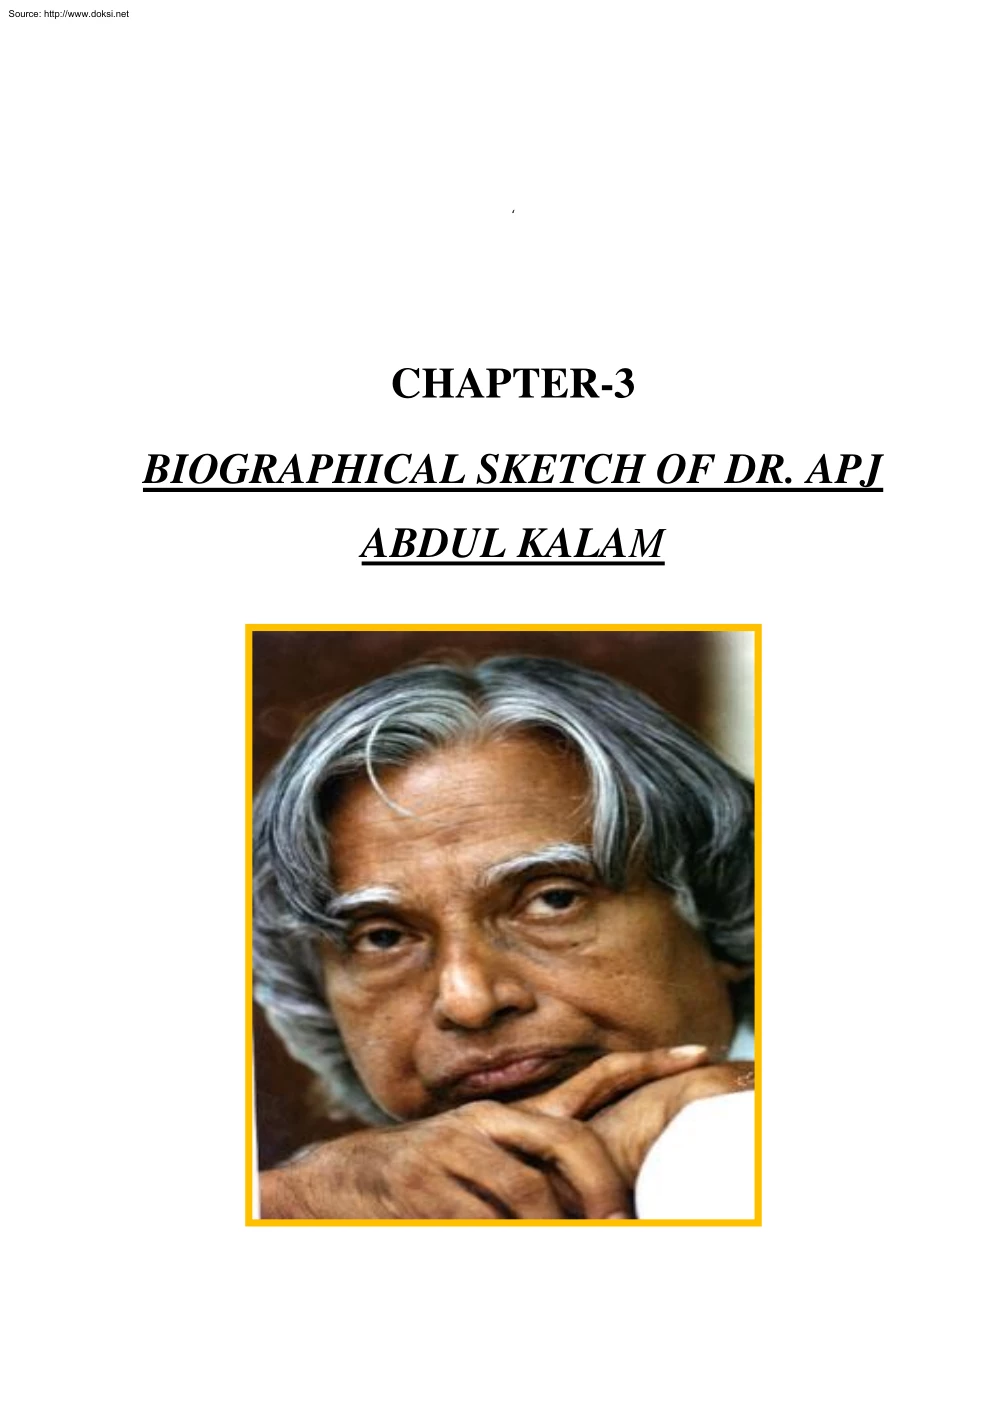 Biographical sketch of Dr. Apj Abdul Kalam